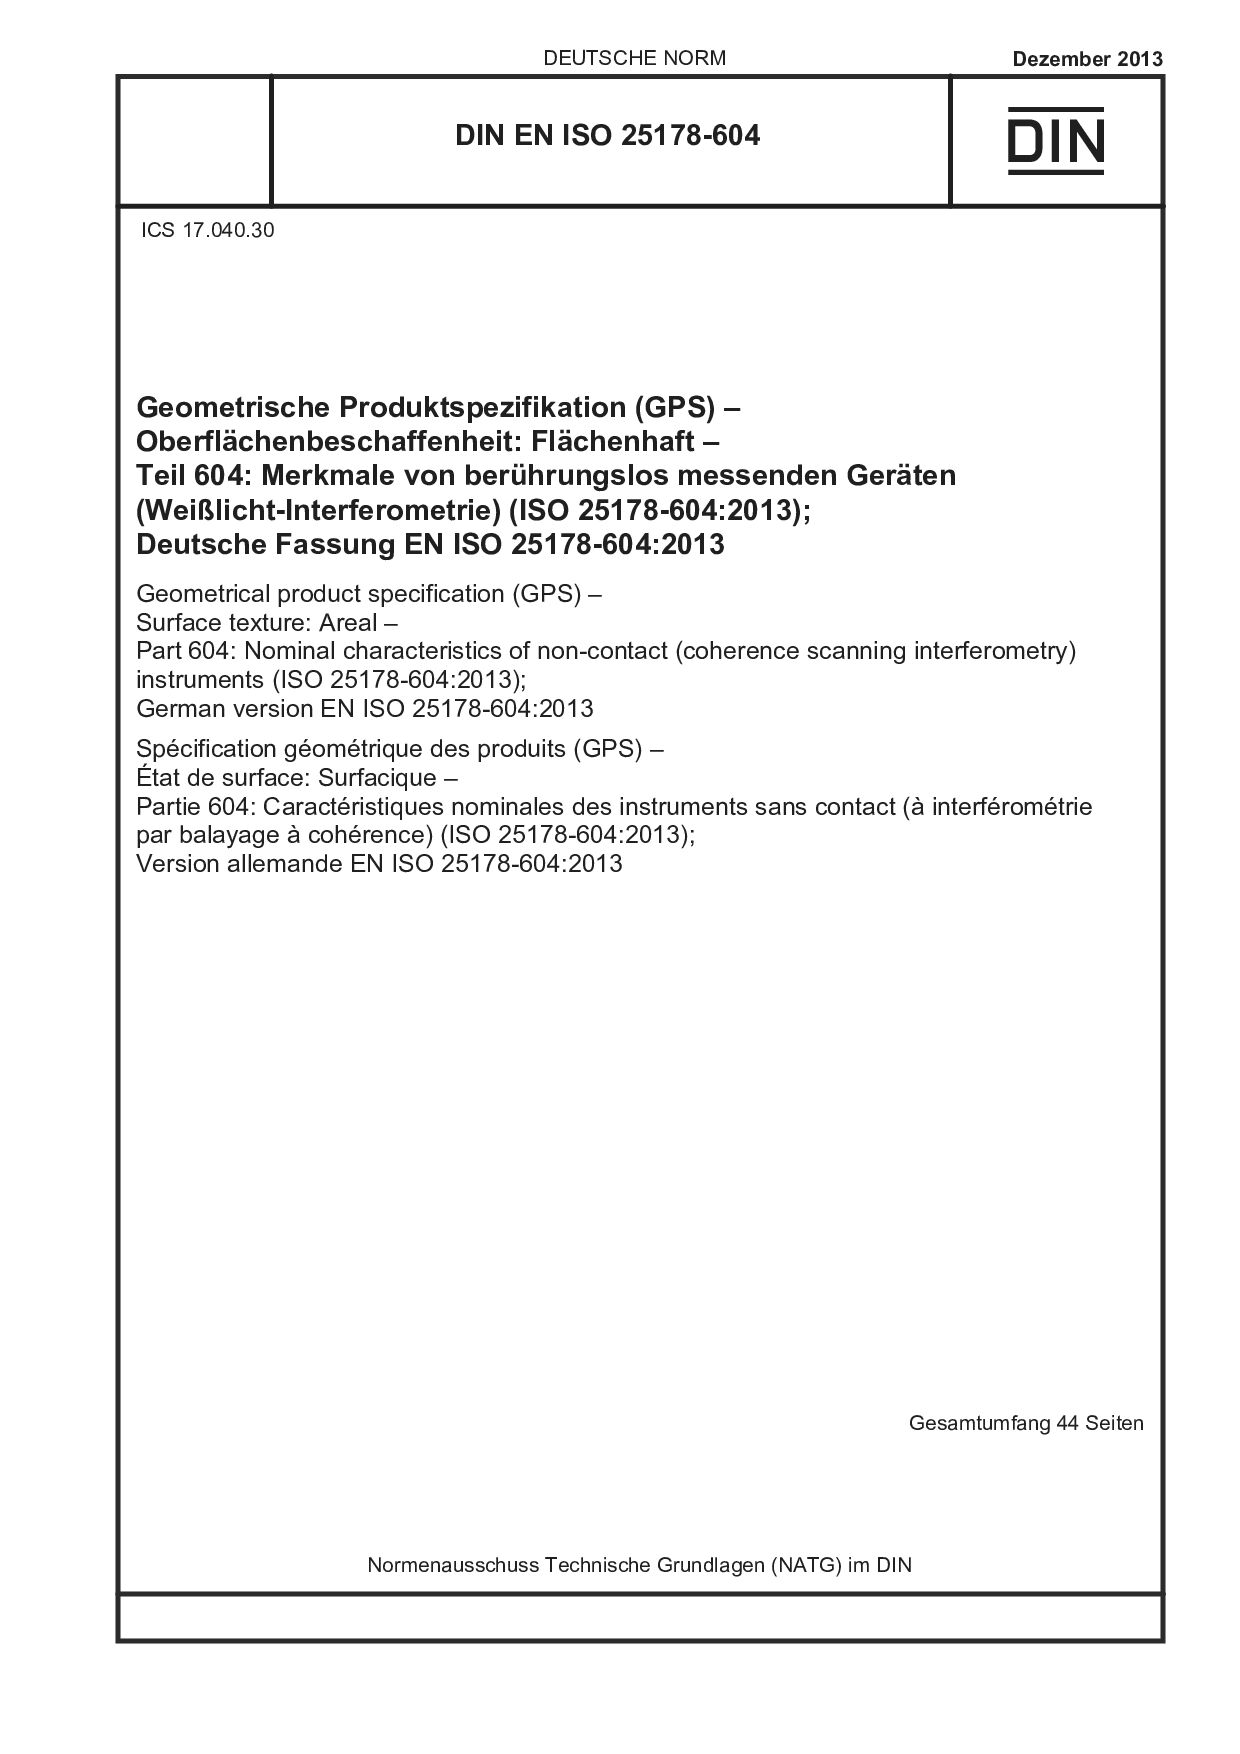 DIN EN ISO 25178-604:2013-12